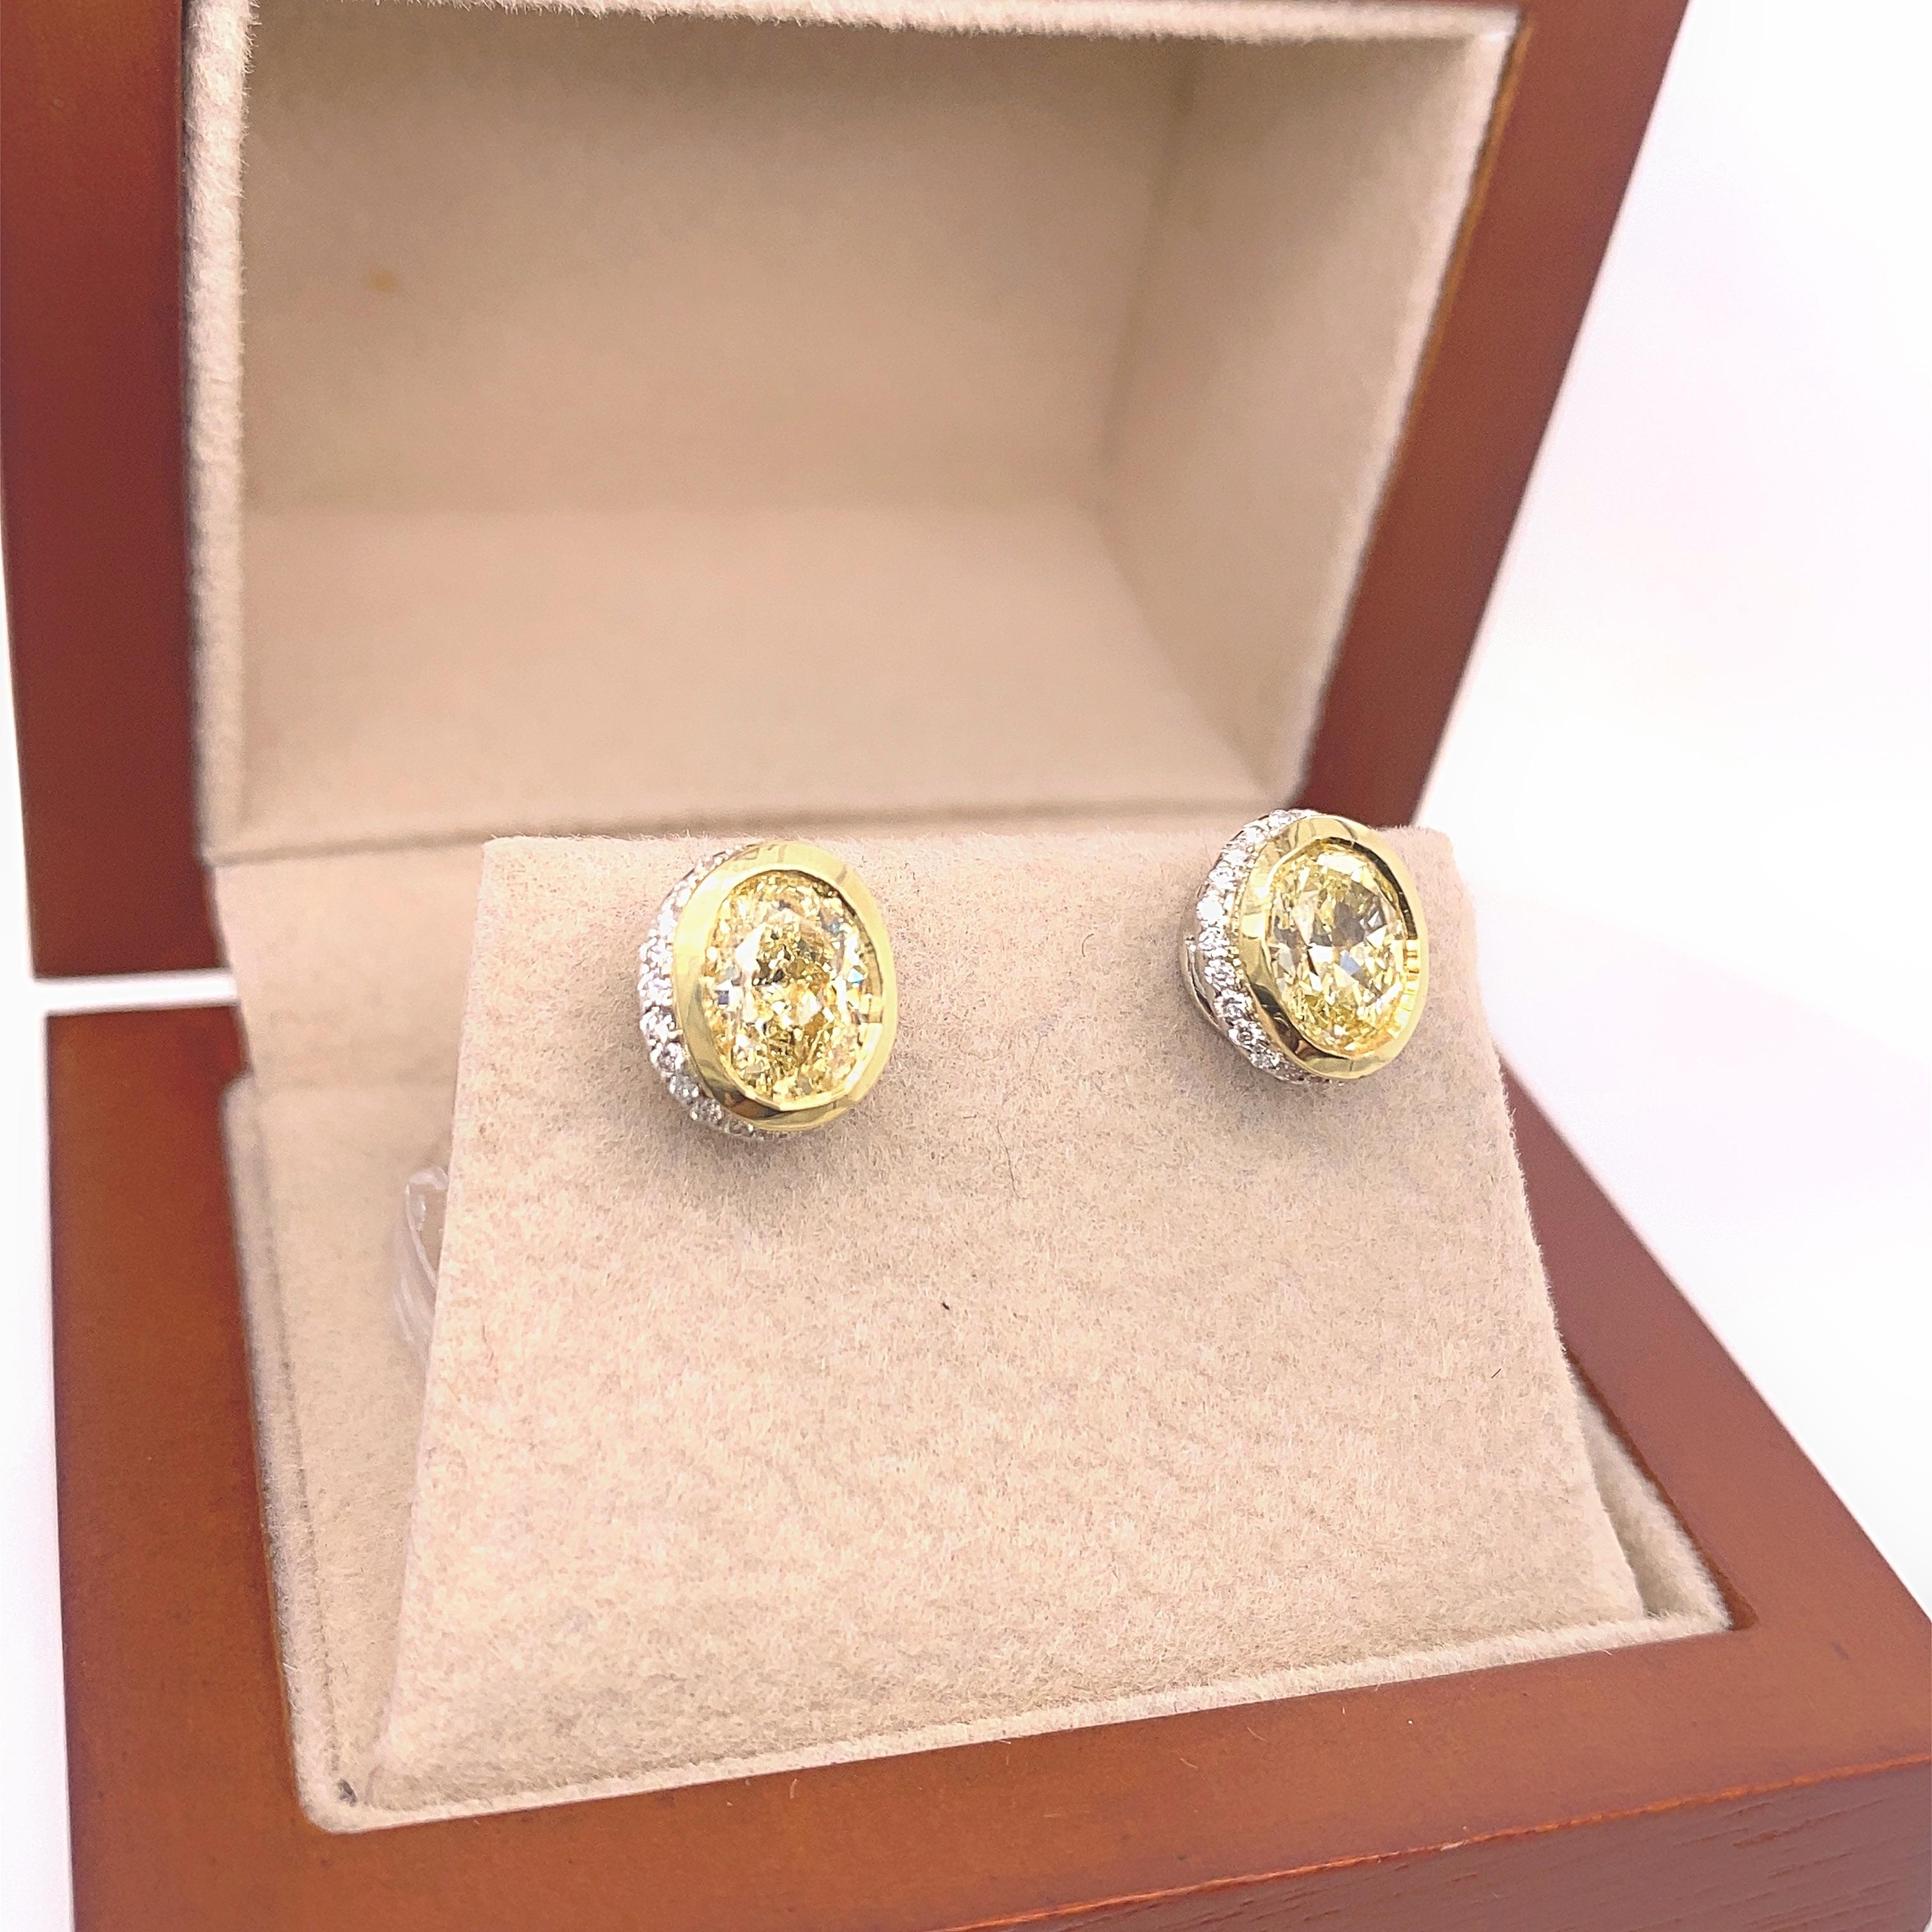 Fancy Yellow Oval Diamond 2.25 tcw Earrings Bezel Set in 18kt Yellow Gold Plat For Sale 5